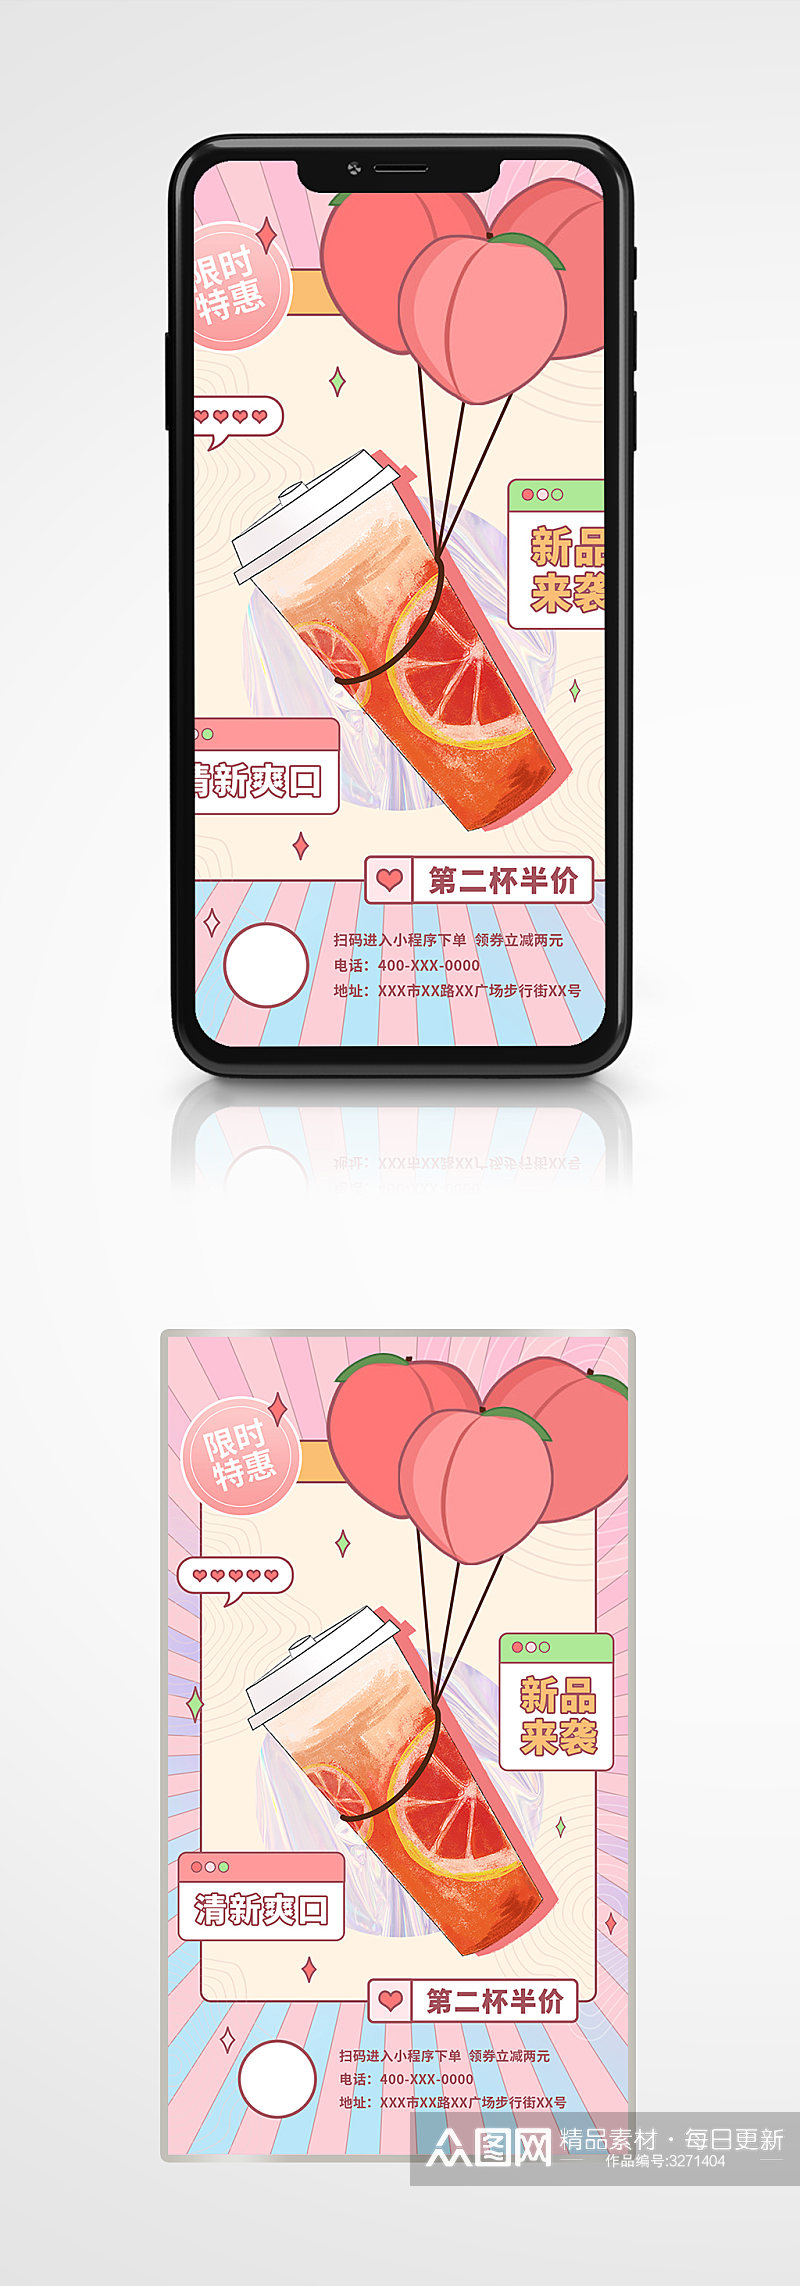 粉红少女爱心奶茶饮料打折促销西柚手机海报素材